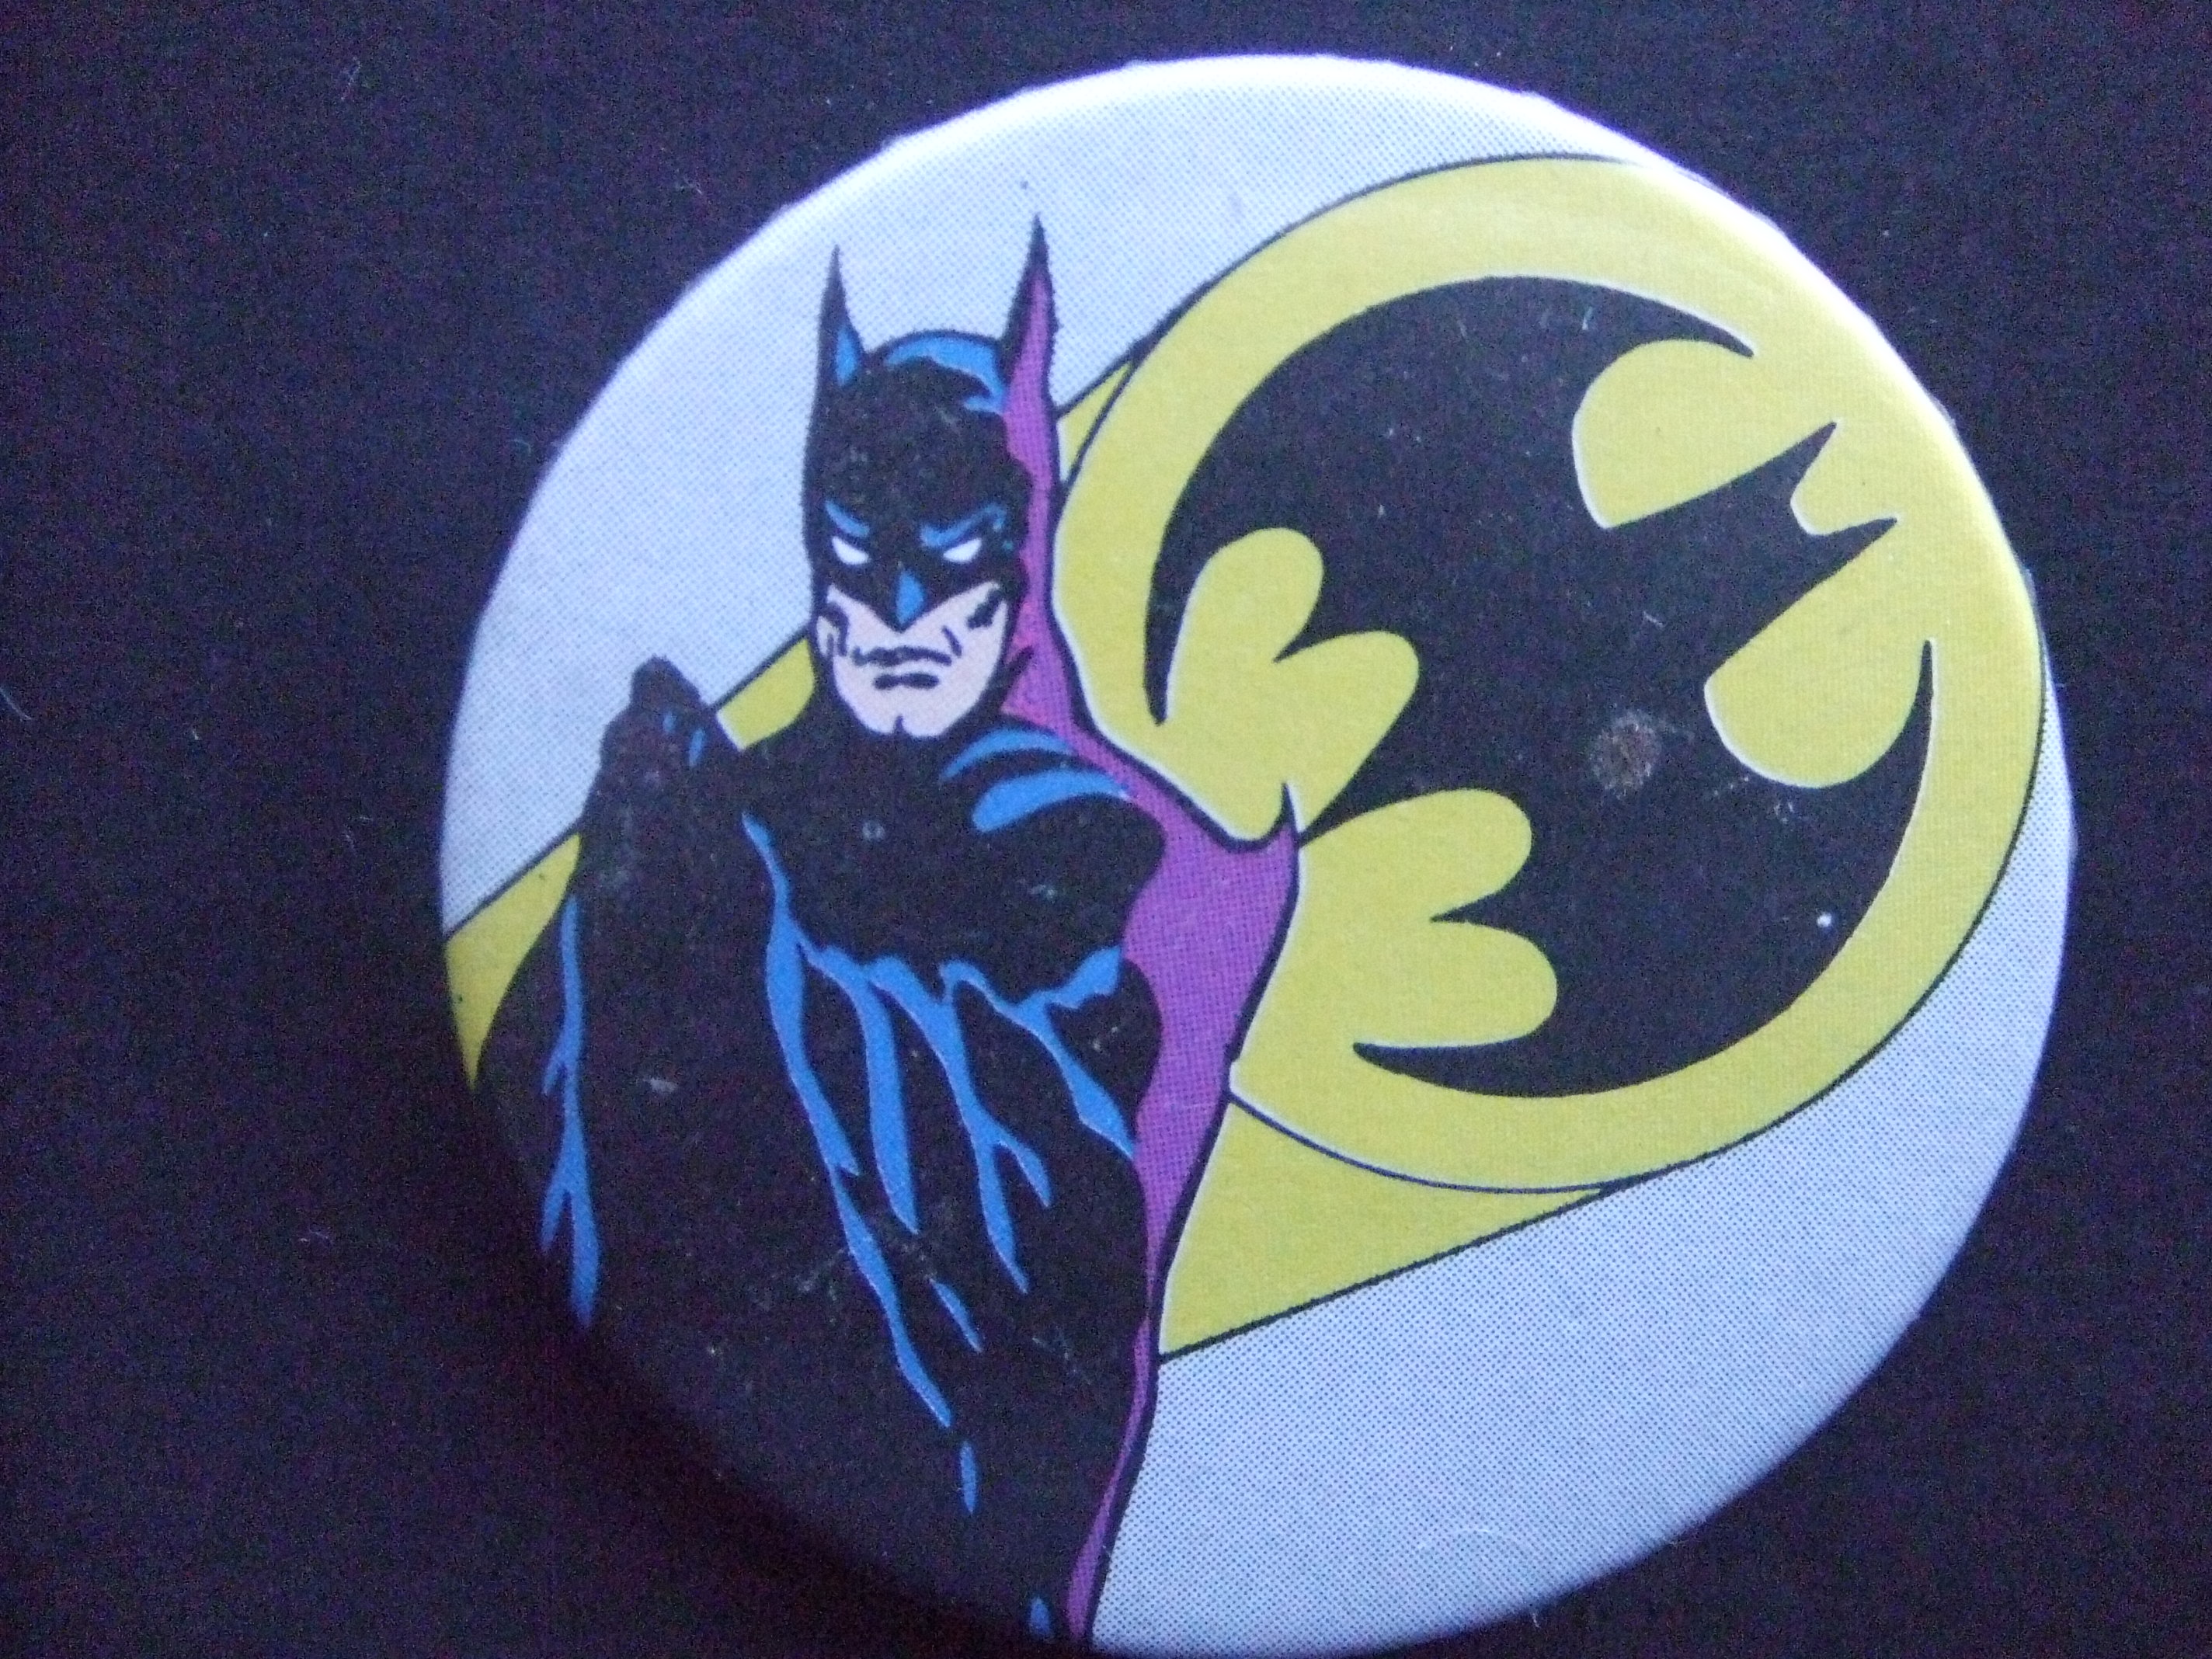 Batman fictieve superheld met logo en lichtbundel rechts